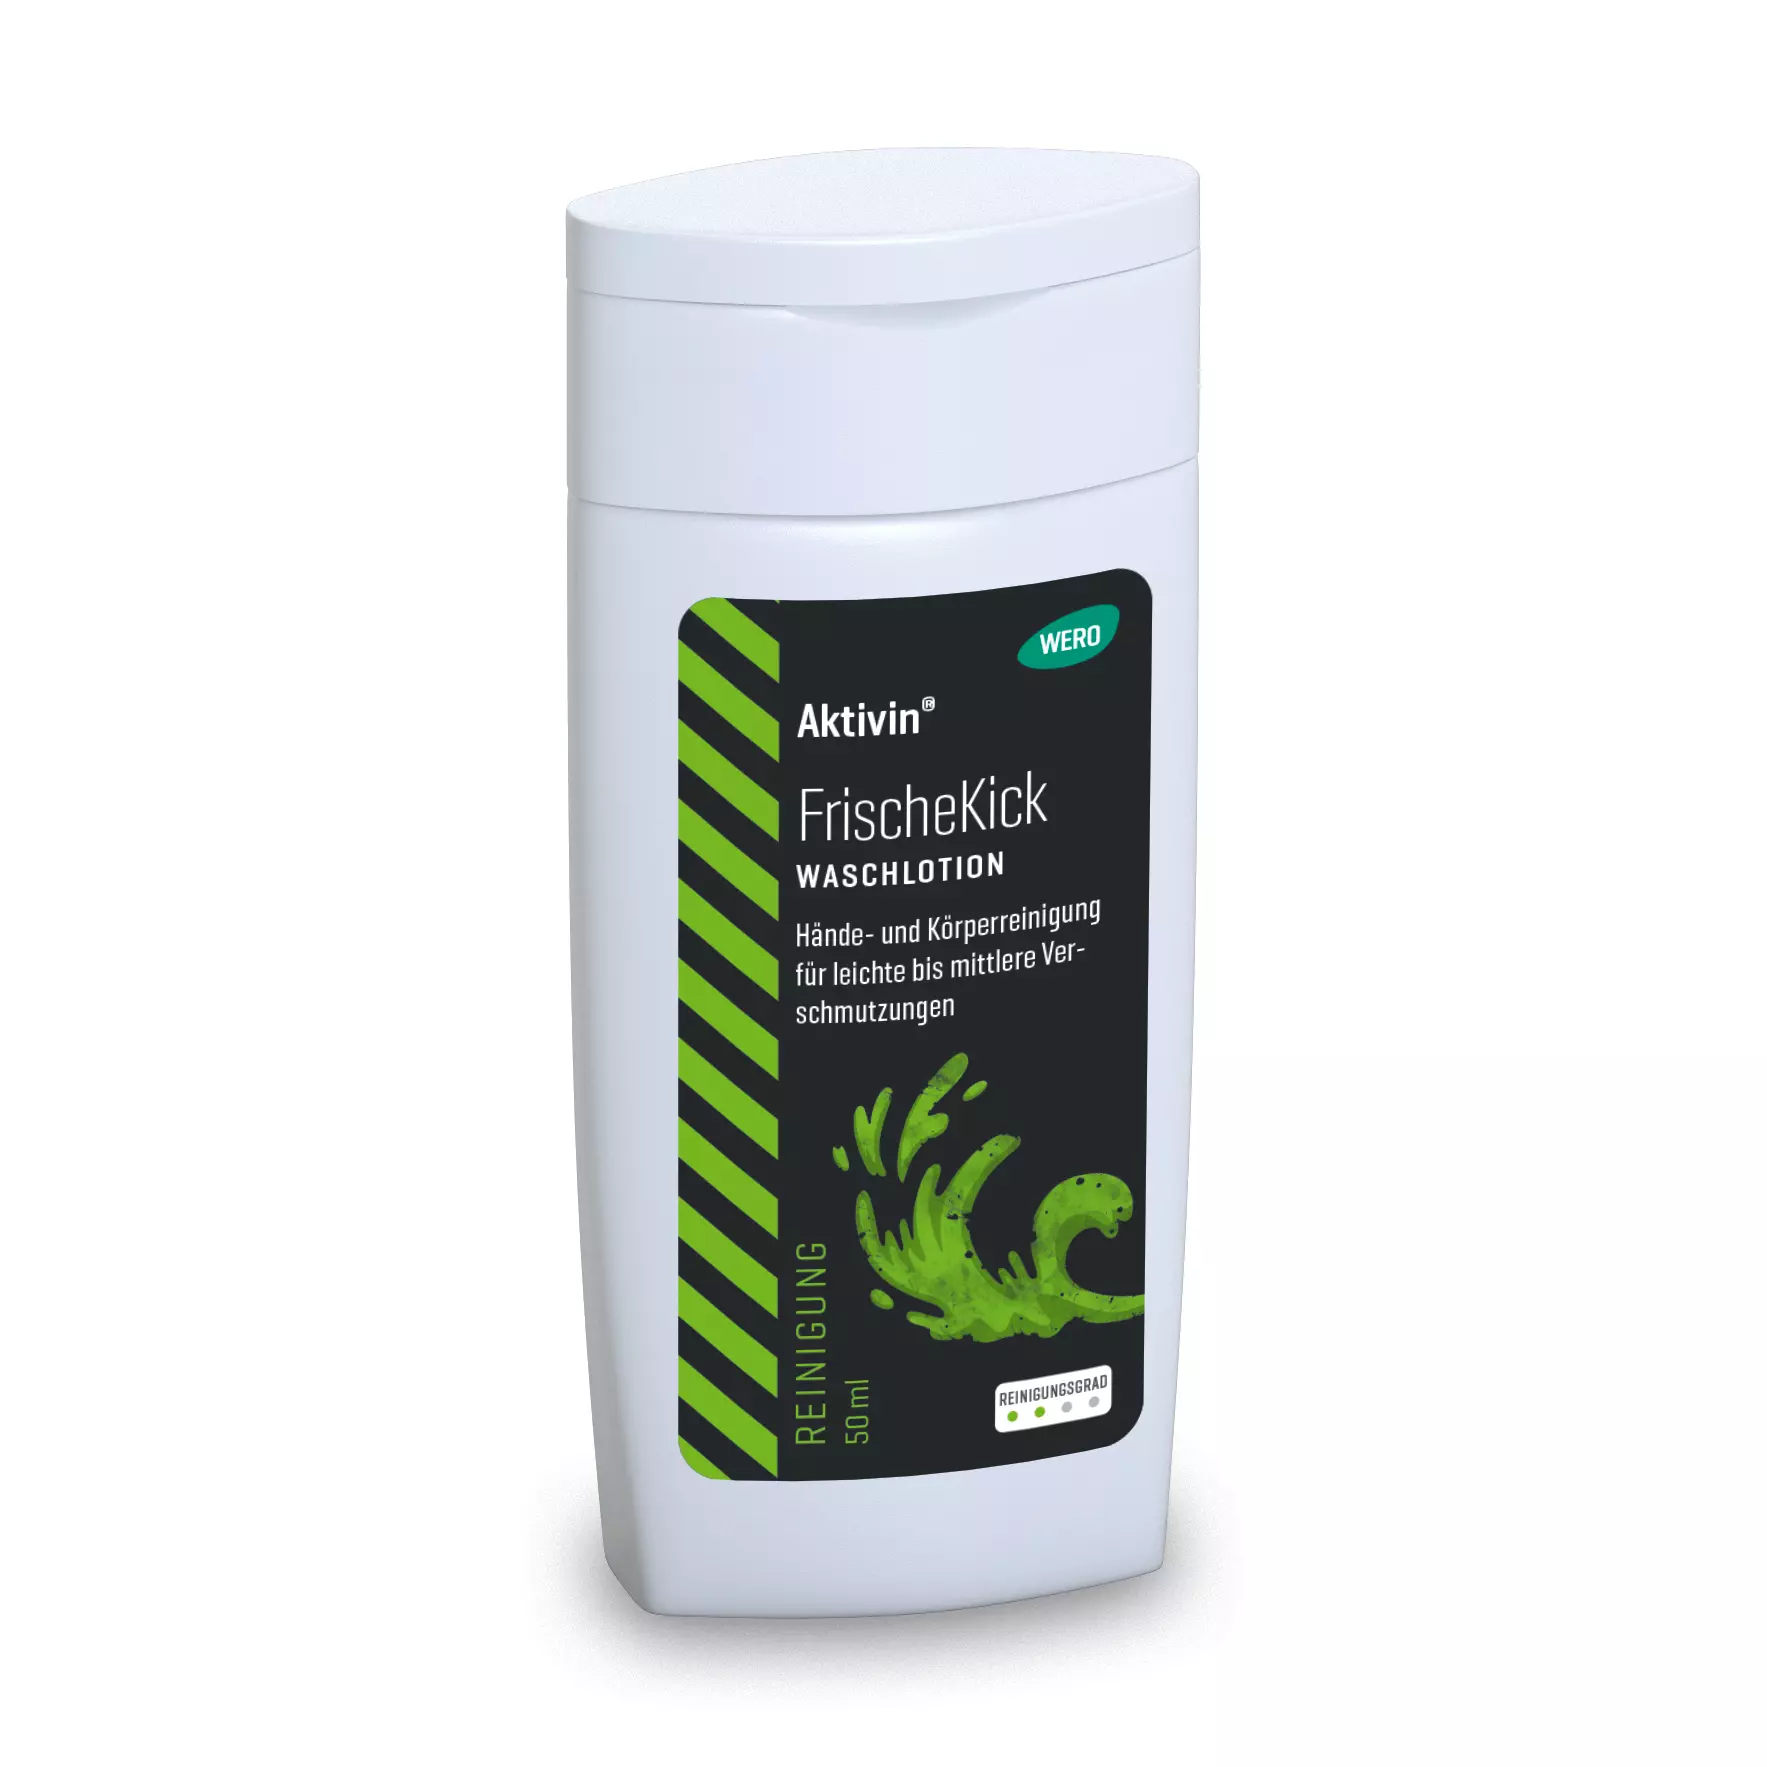 Skin cleansing Aktivin® FrischeKick - trial size, 50 ml